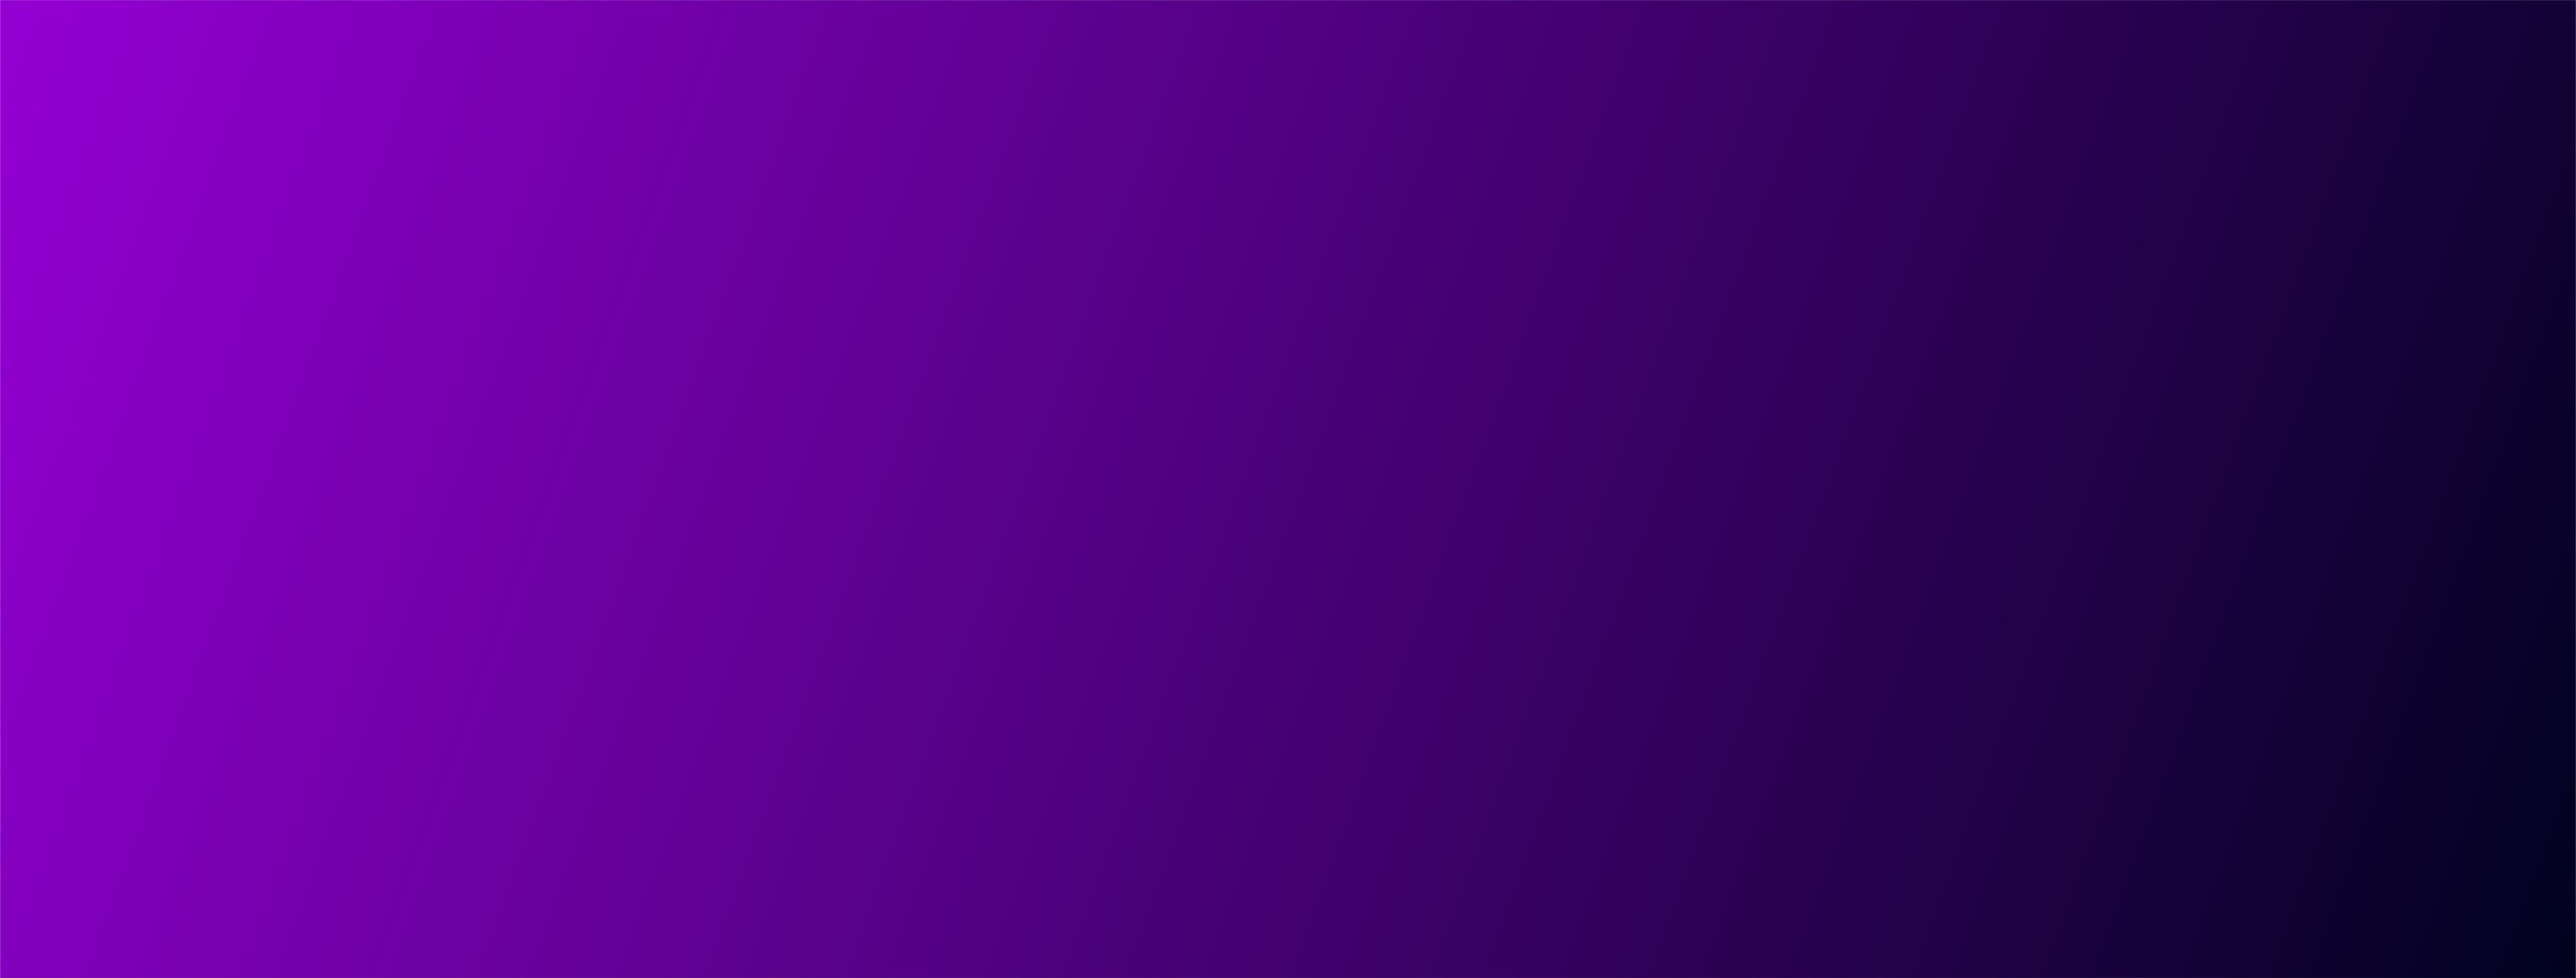 Dark Purple Gradient Banner Background